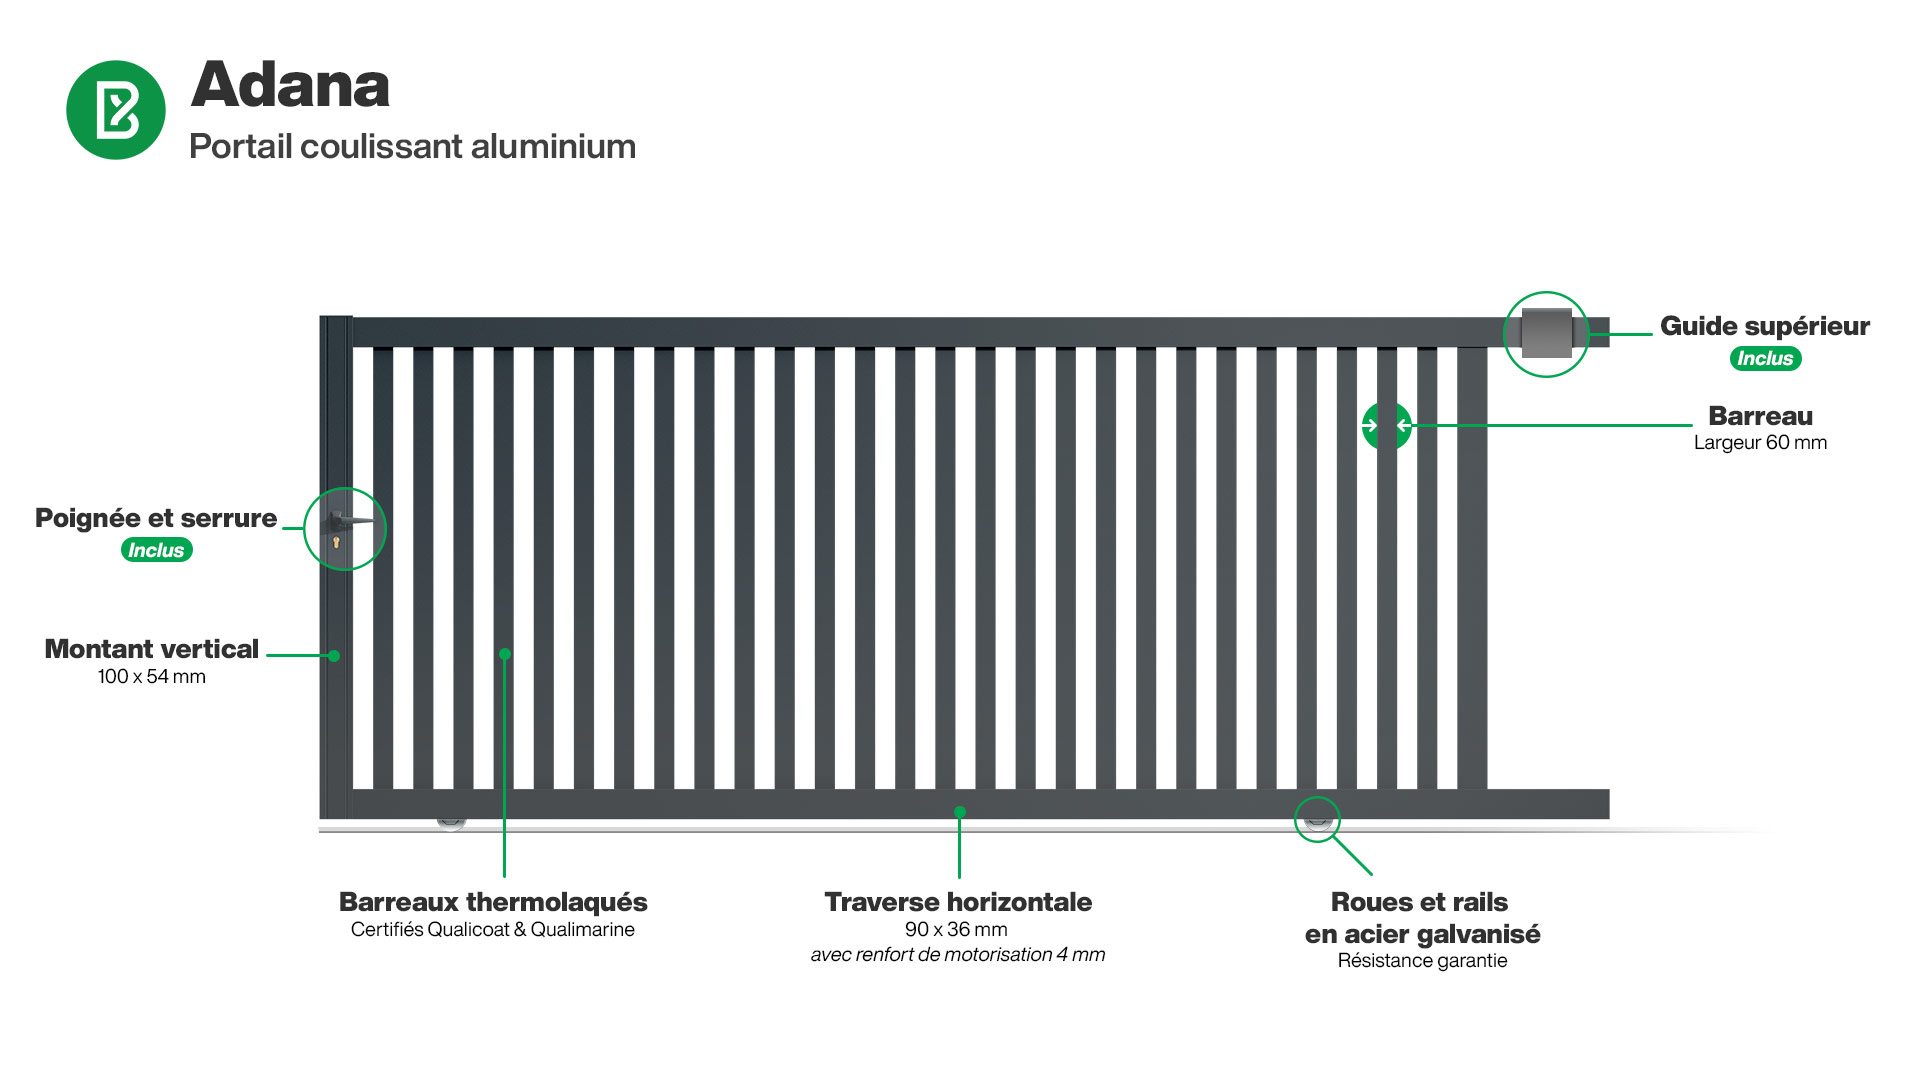 Portail : Infographie d'un portail coulissant aluminium modèle ADANA